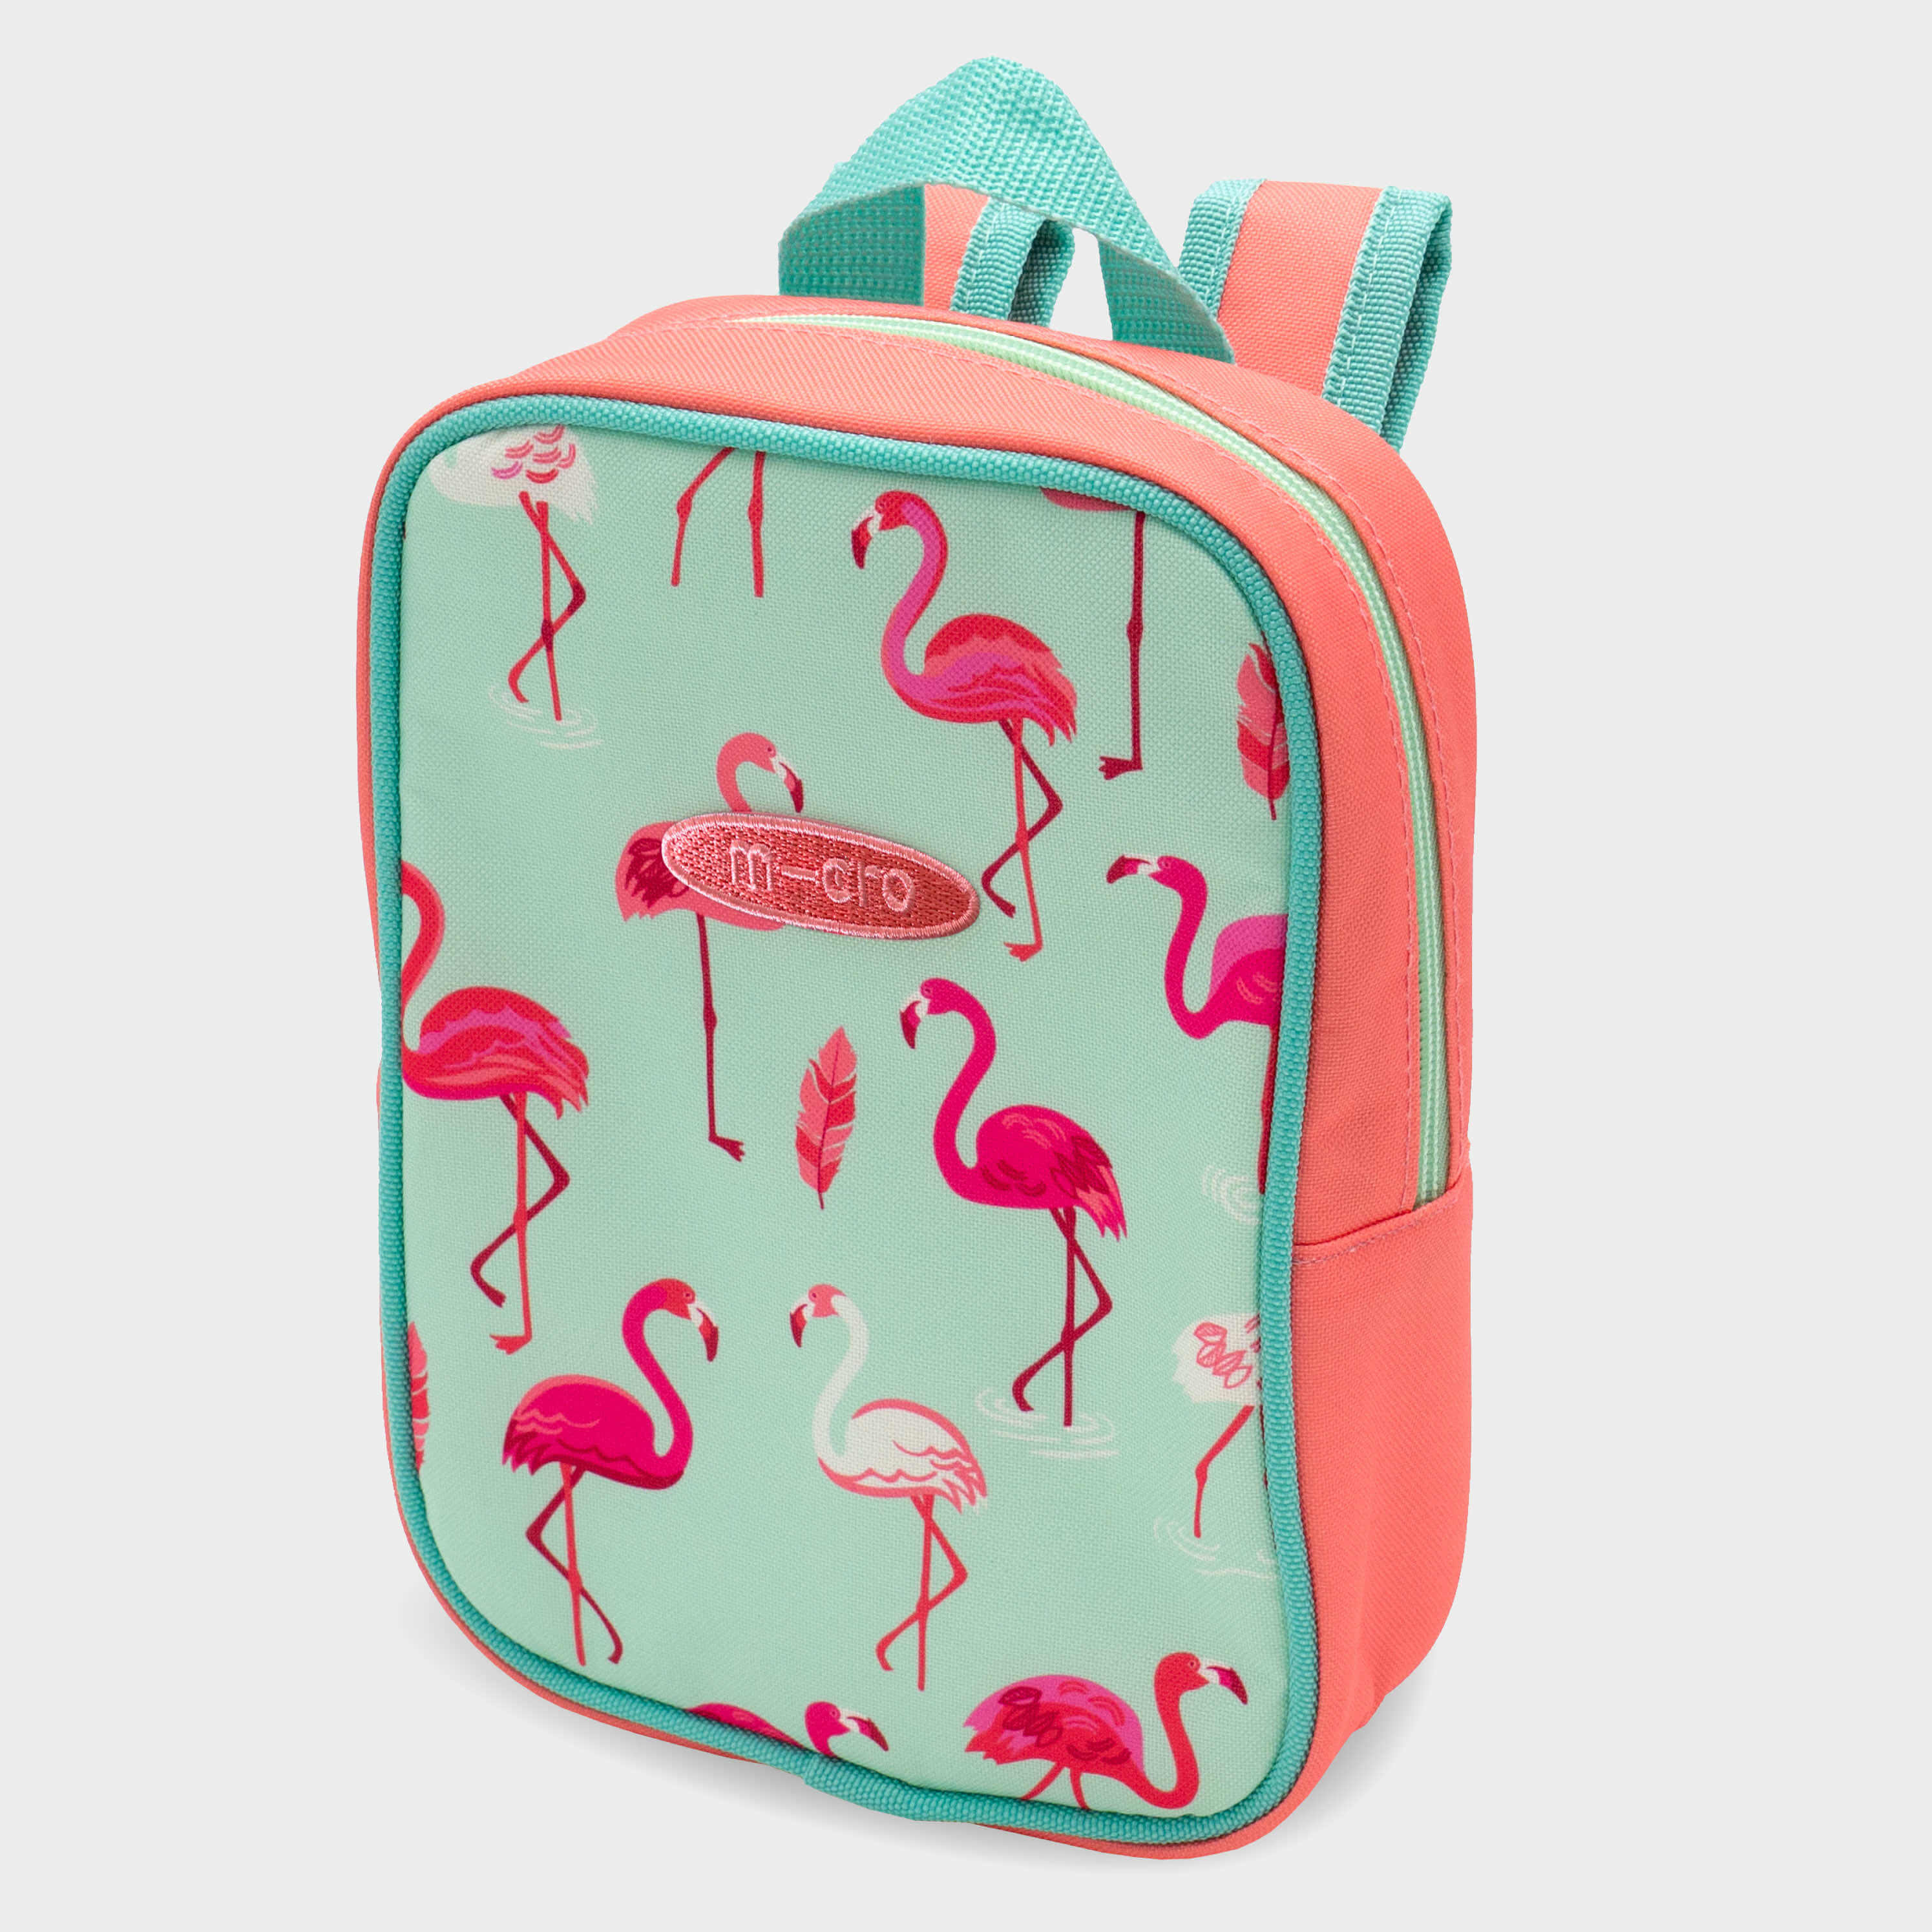 Shop for School Bags online – Popup Kids